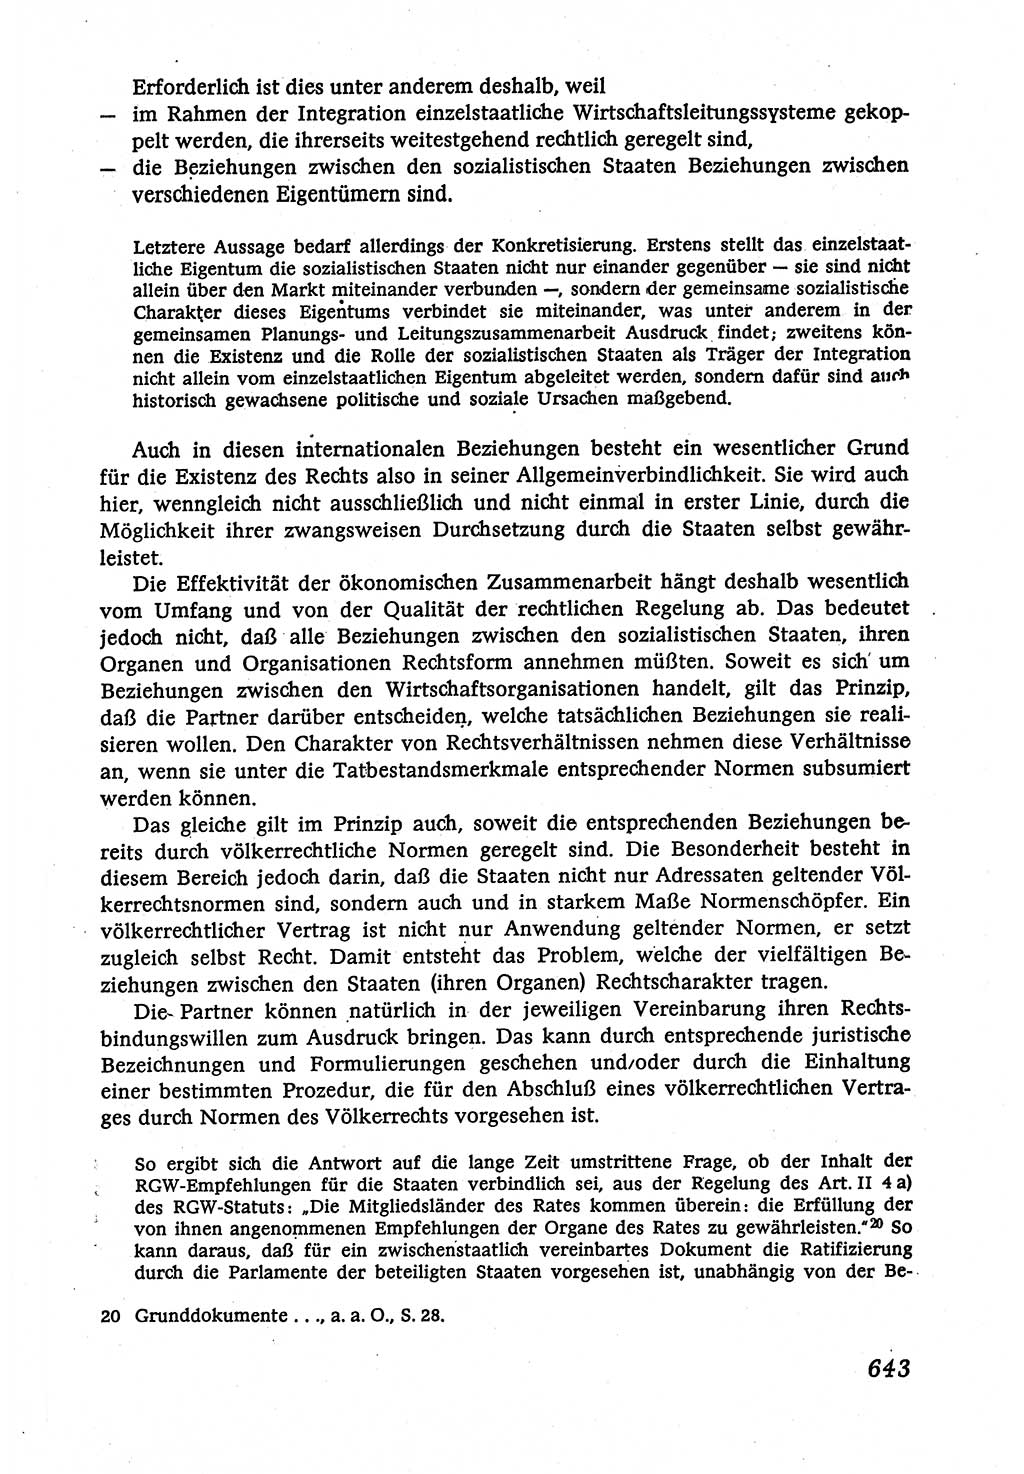 Marxistisch-leninistische (ML) Staats- und Rechtstheorie [Deutsche Demokratische Republik (DDR)], Lehrbuch 1980, Seite 643 (ML St.-R.-Th. DDR Lb. 1980, S. 643)